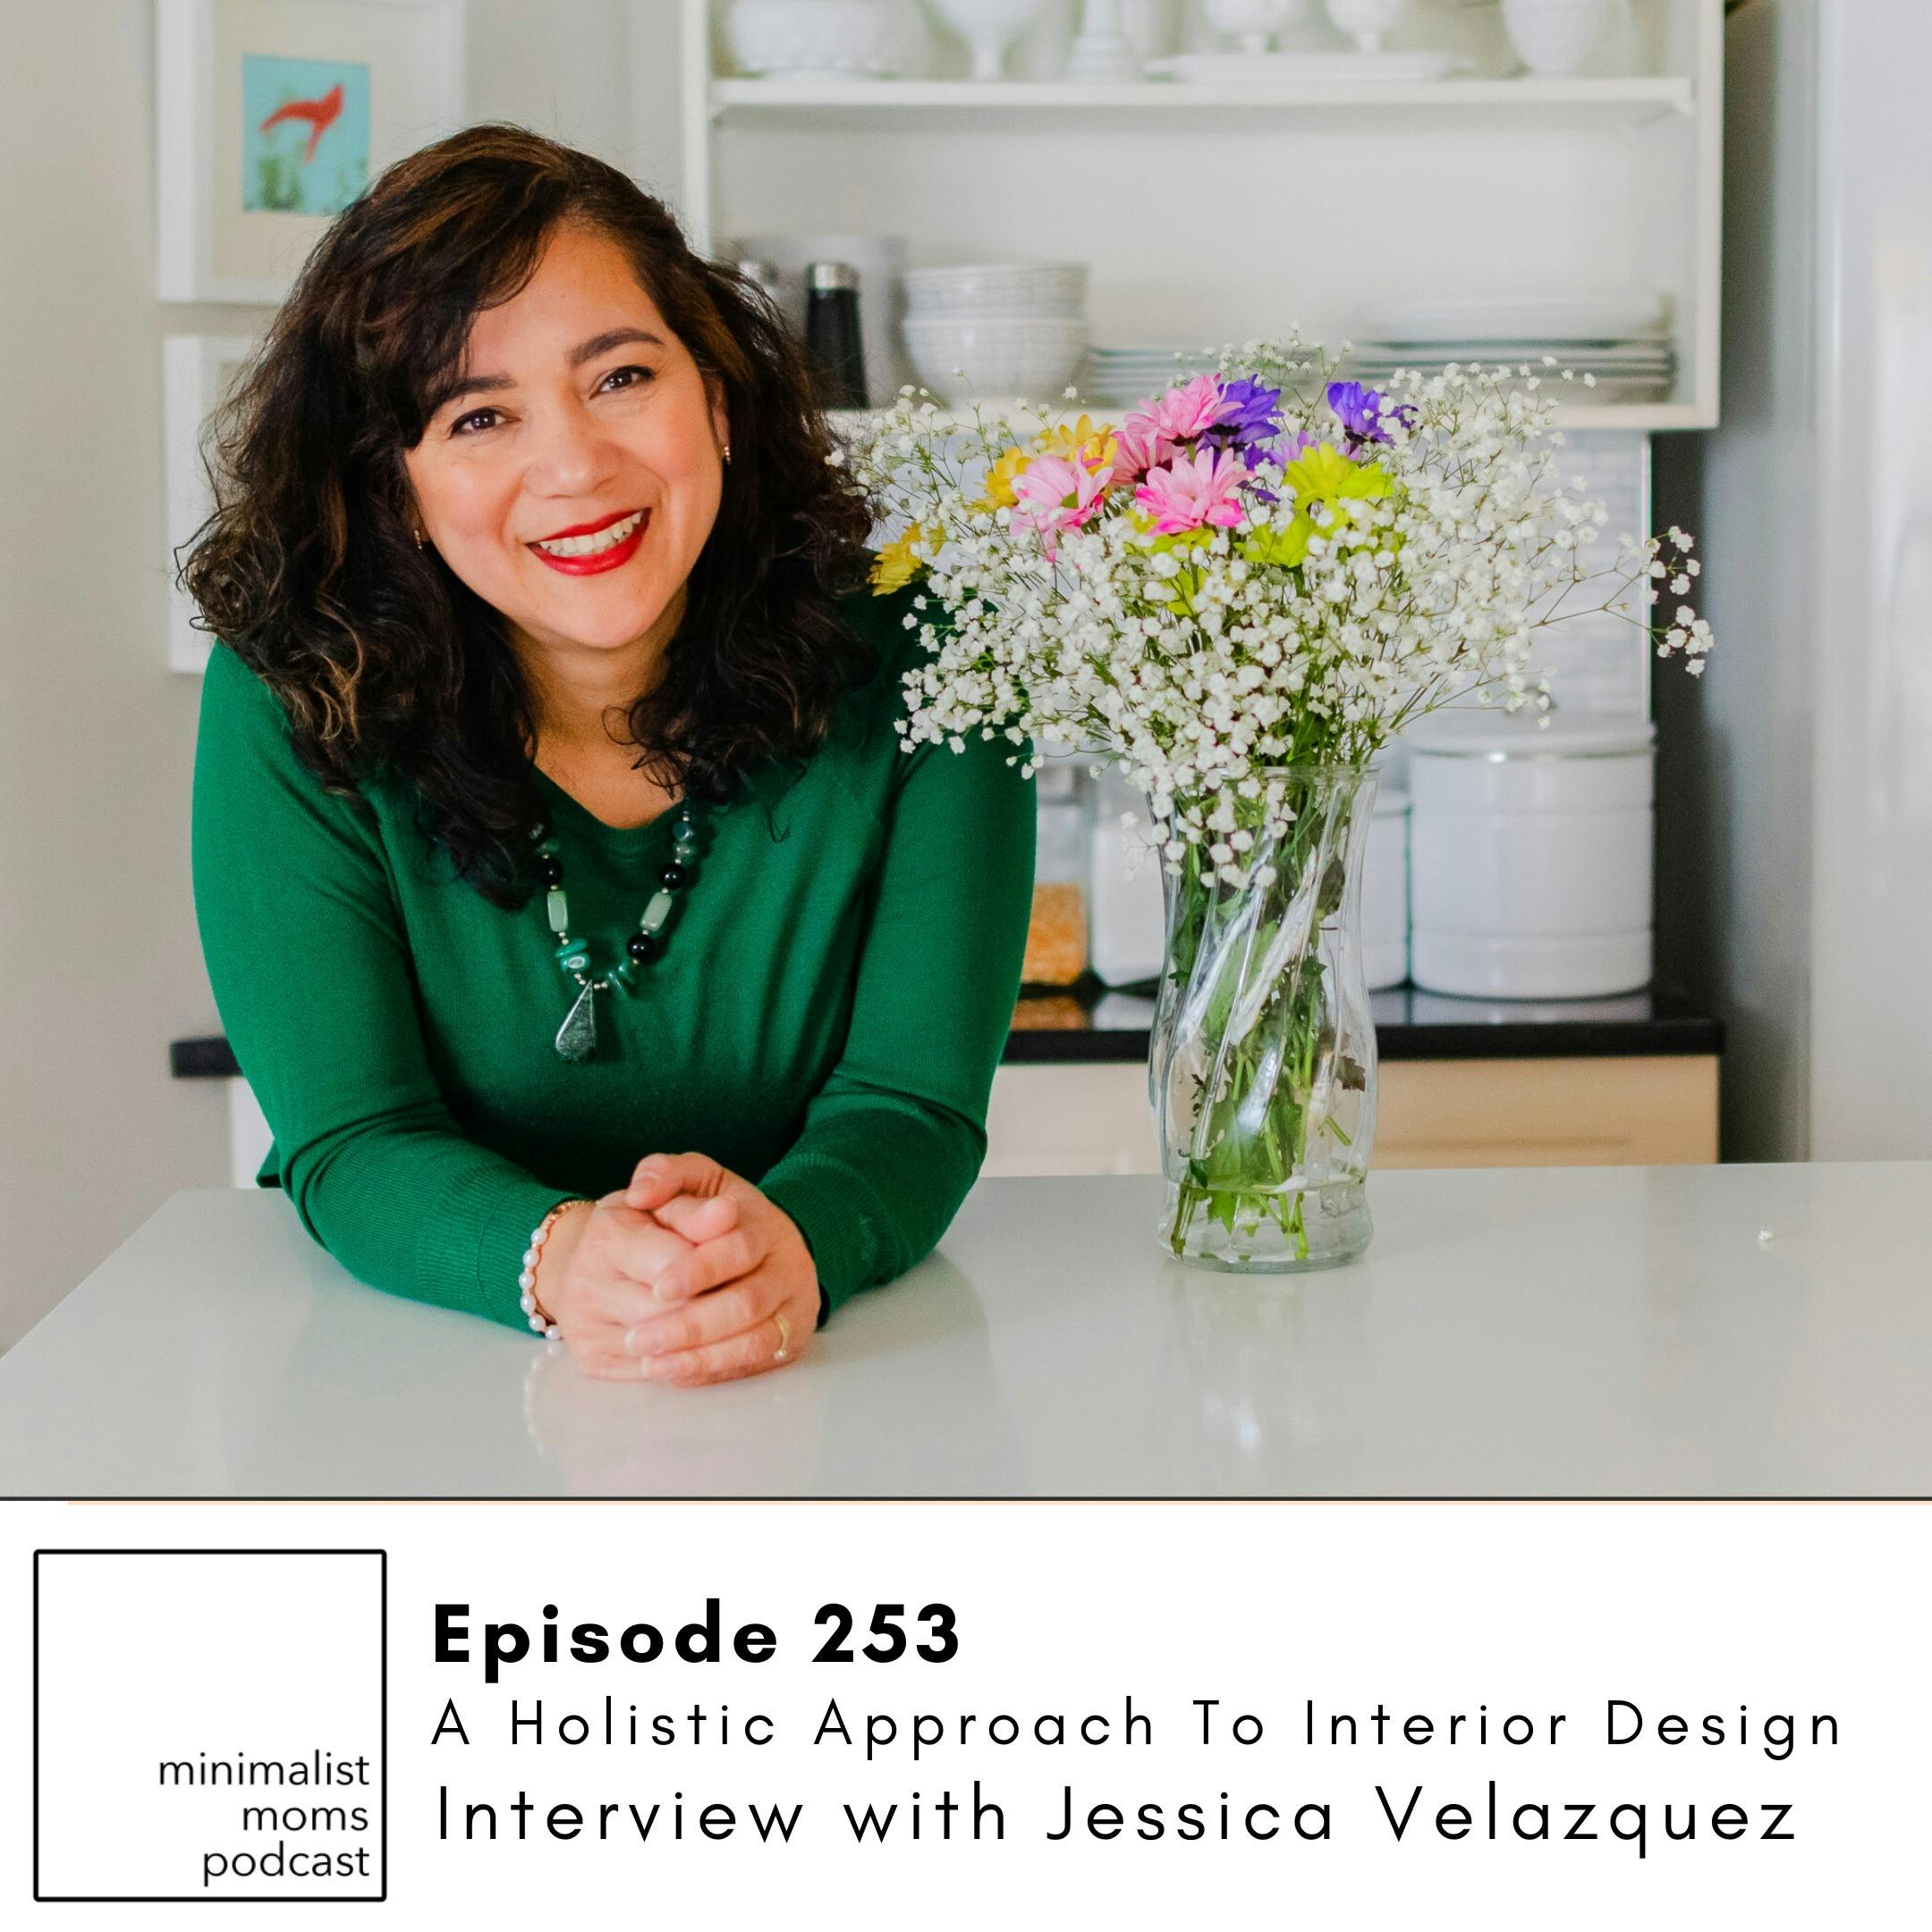 EP253: A Holistic Approach To Interior Design with Jessica Velazquez